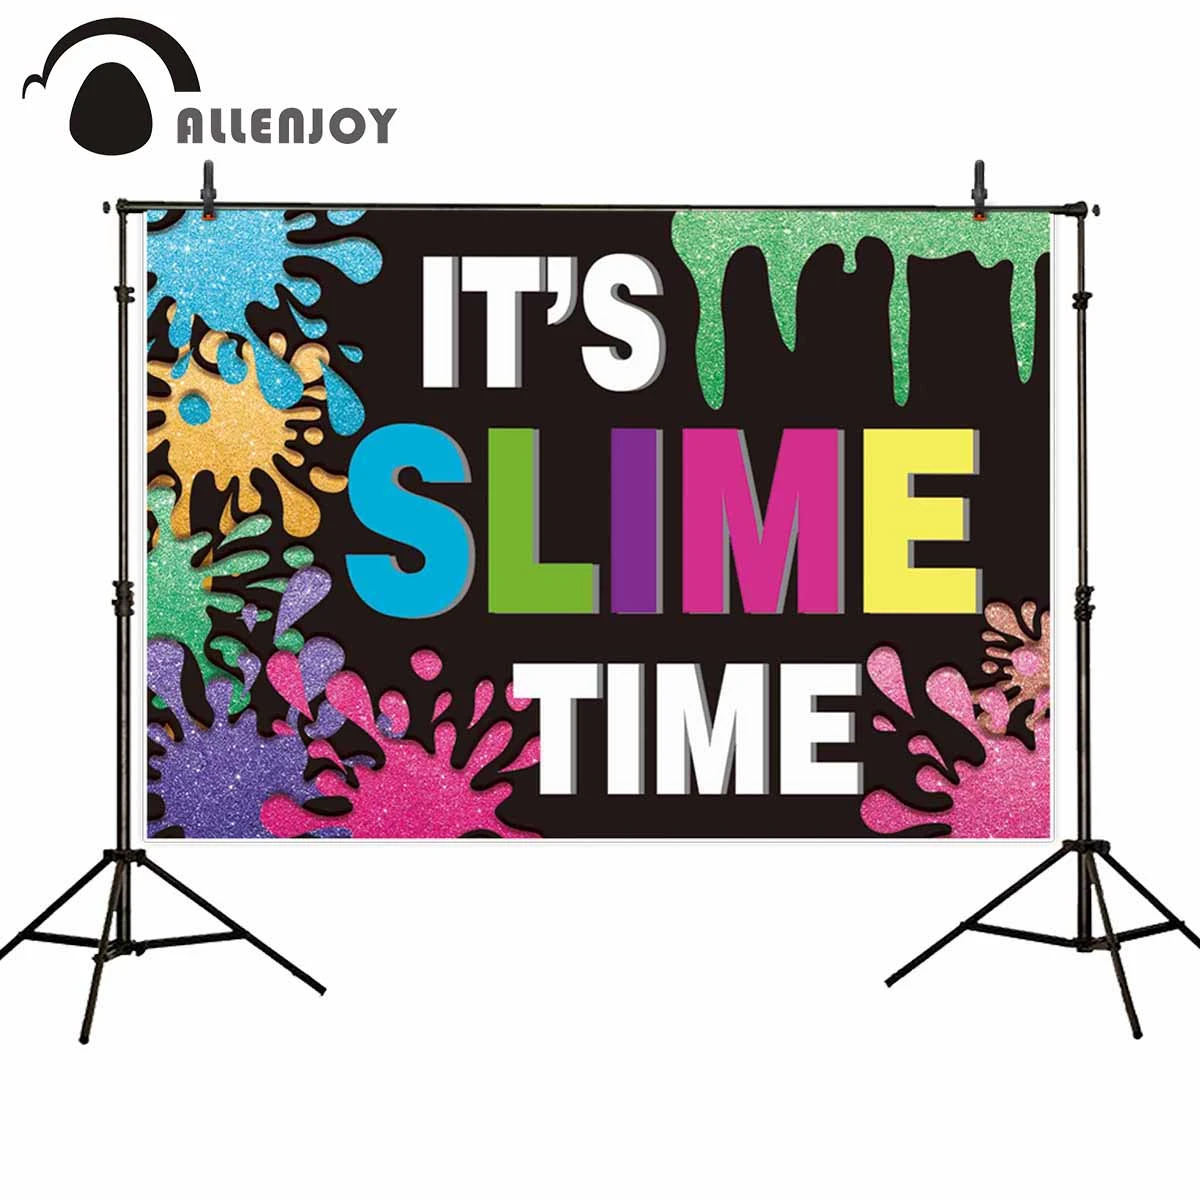 Allenjoy fondos de pantalla de grafiti, pizarra colorida, es hora de Slime,  Baby Shower, Fondo de dibujos animados, decoración para fiesta de  cumpleaños|Fondos para fiestas| - AliExpress